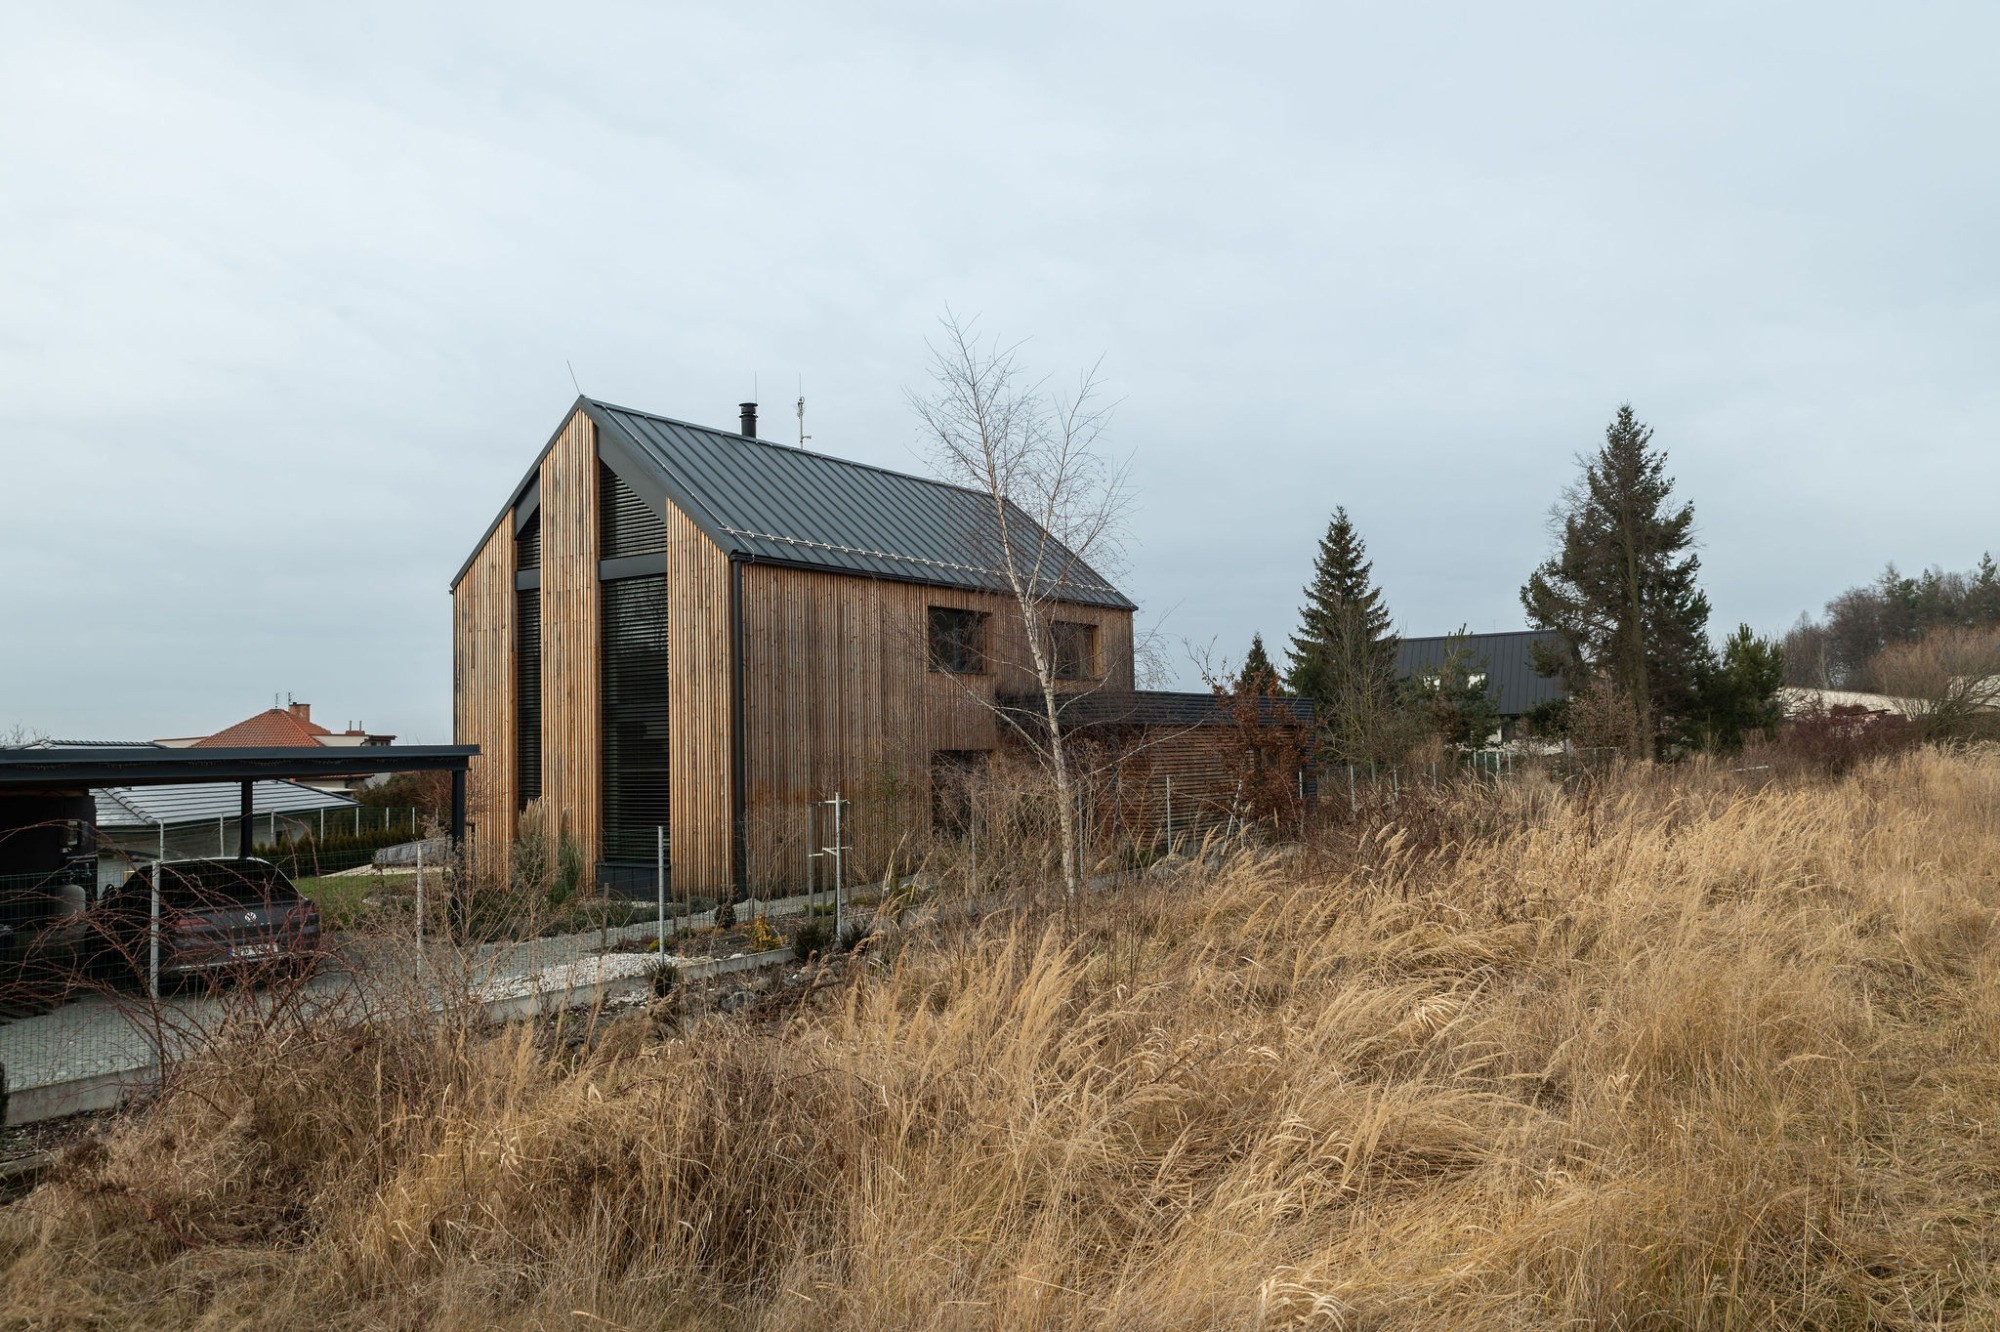 Rodinným domům na venkově sluší sedlové střechy, říká architekt Václav Kosnar